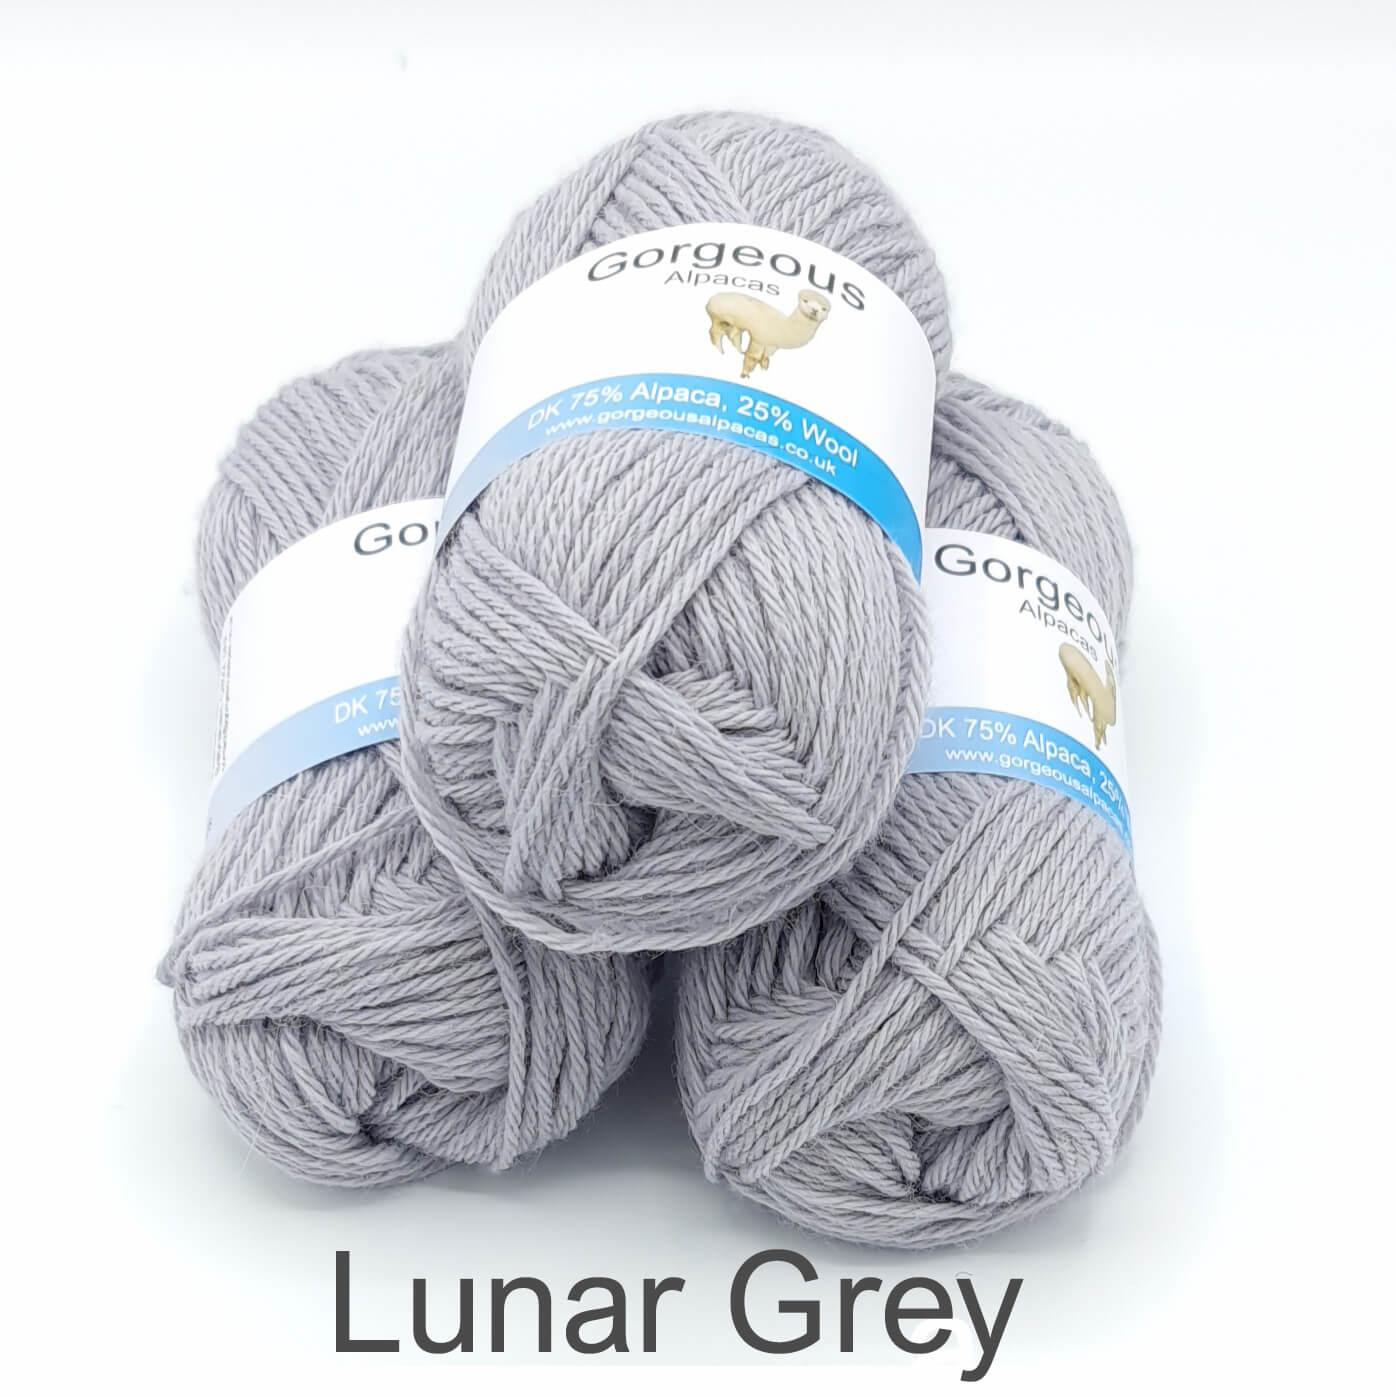 Lunar Grey Alpaca Yarn